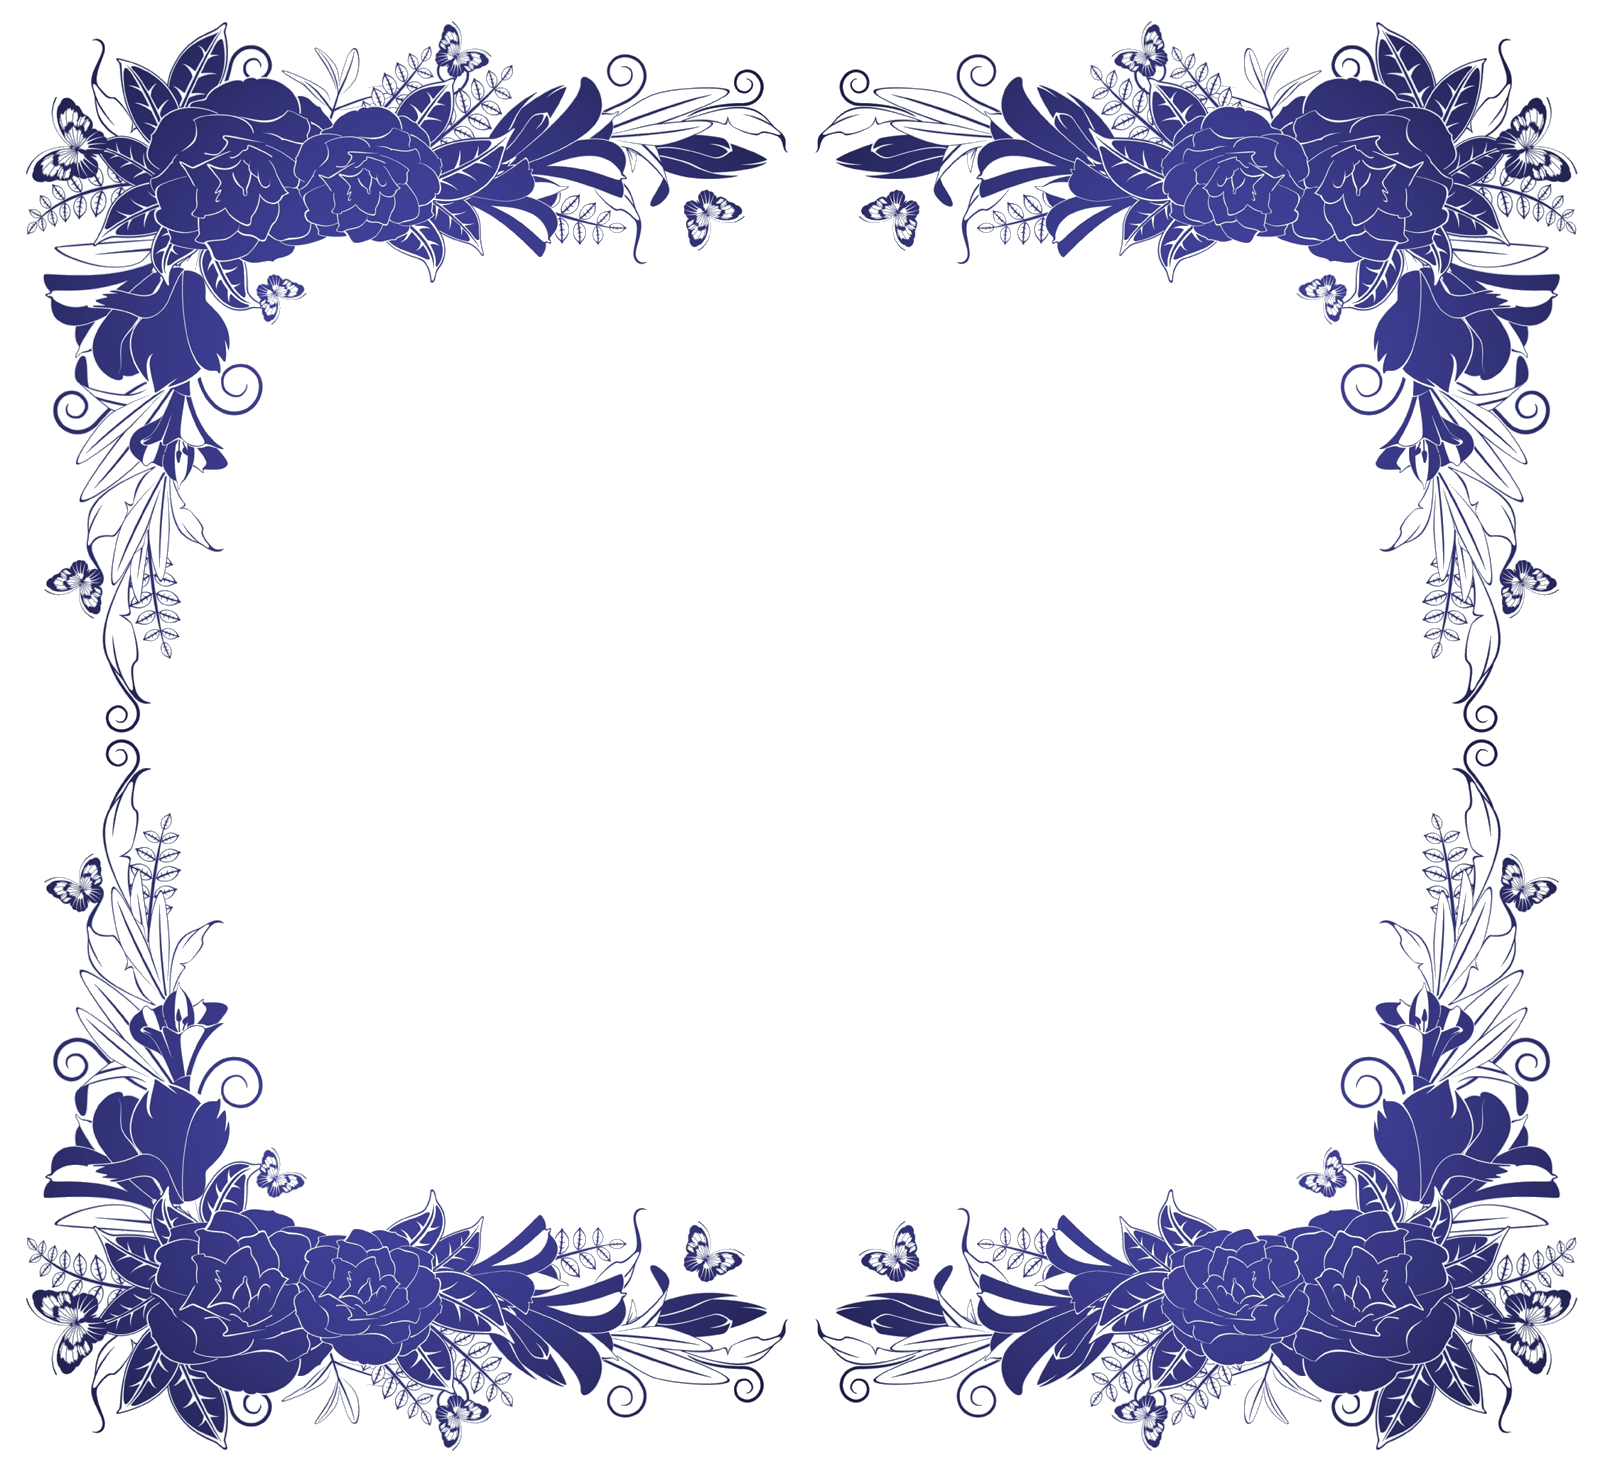 青い花のイラスト フリー素材 No 248 青基調